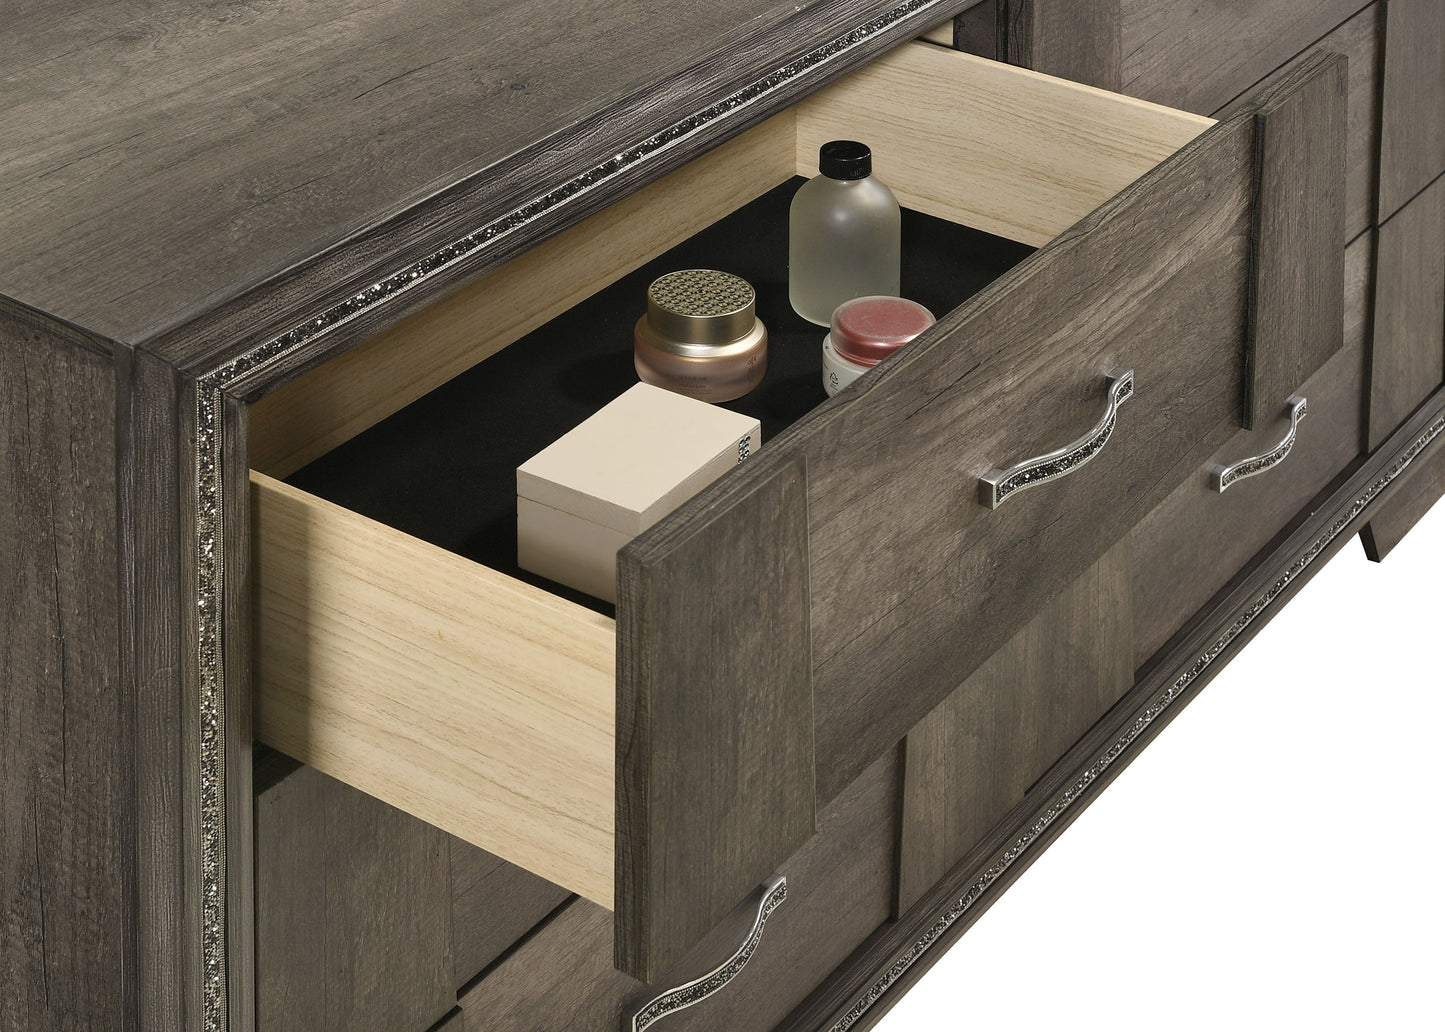 Janine 6-drawer Dresser with Mirror Grey